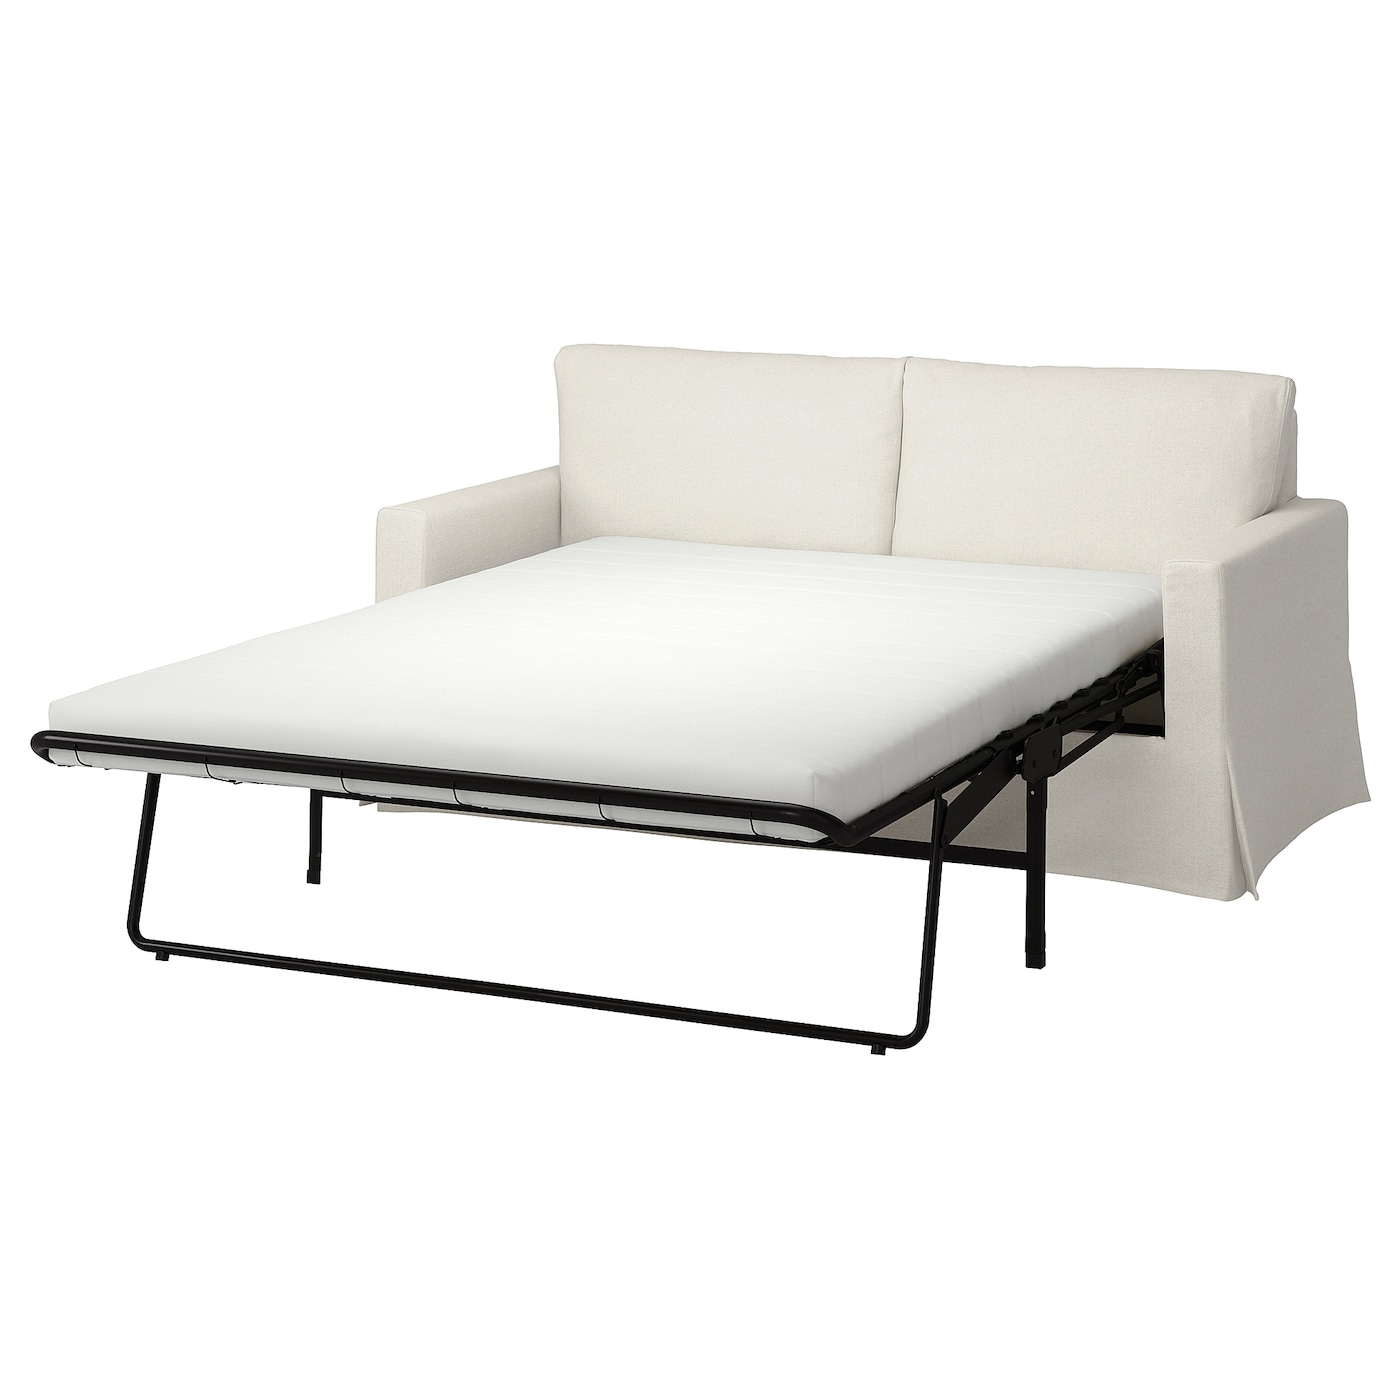 2-местный диван - IKEA HYLTARP, 93x182см, белый, ХИЛТАРП ИКЕА